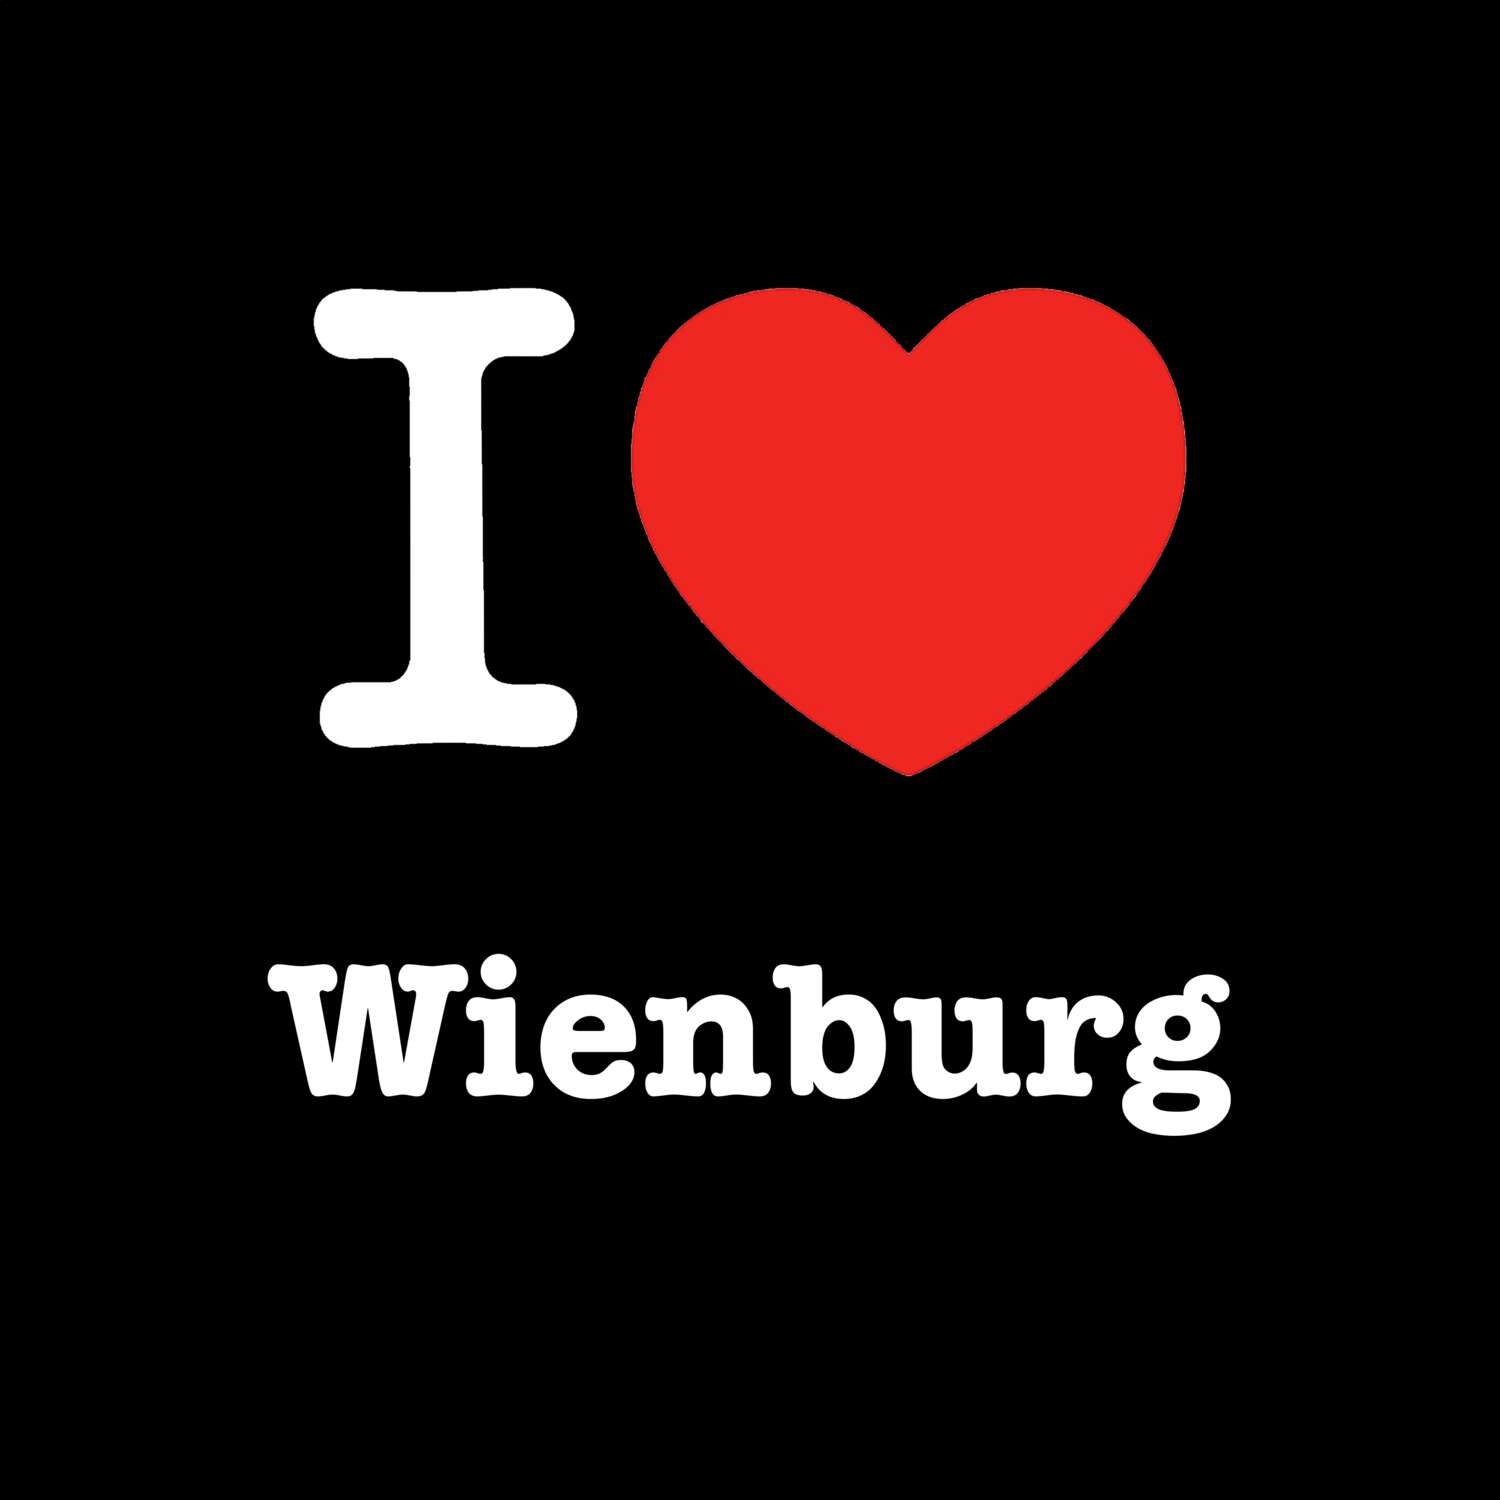 Wienburg T-Shirt »I love«